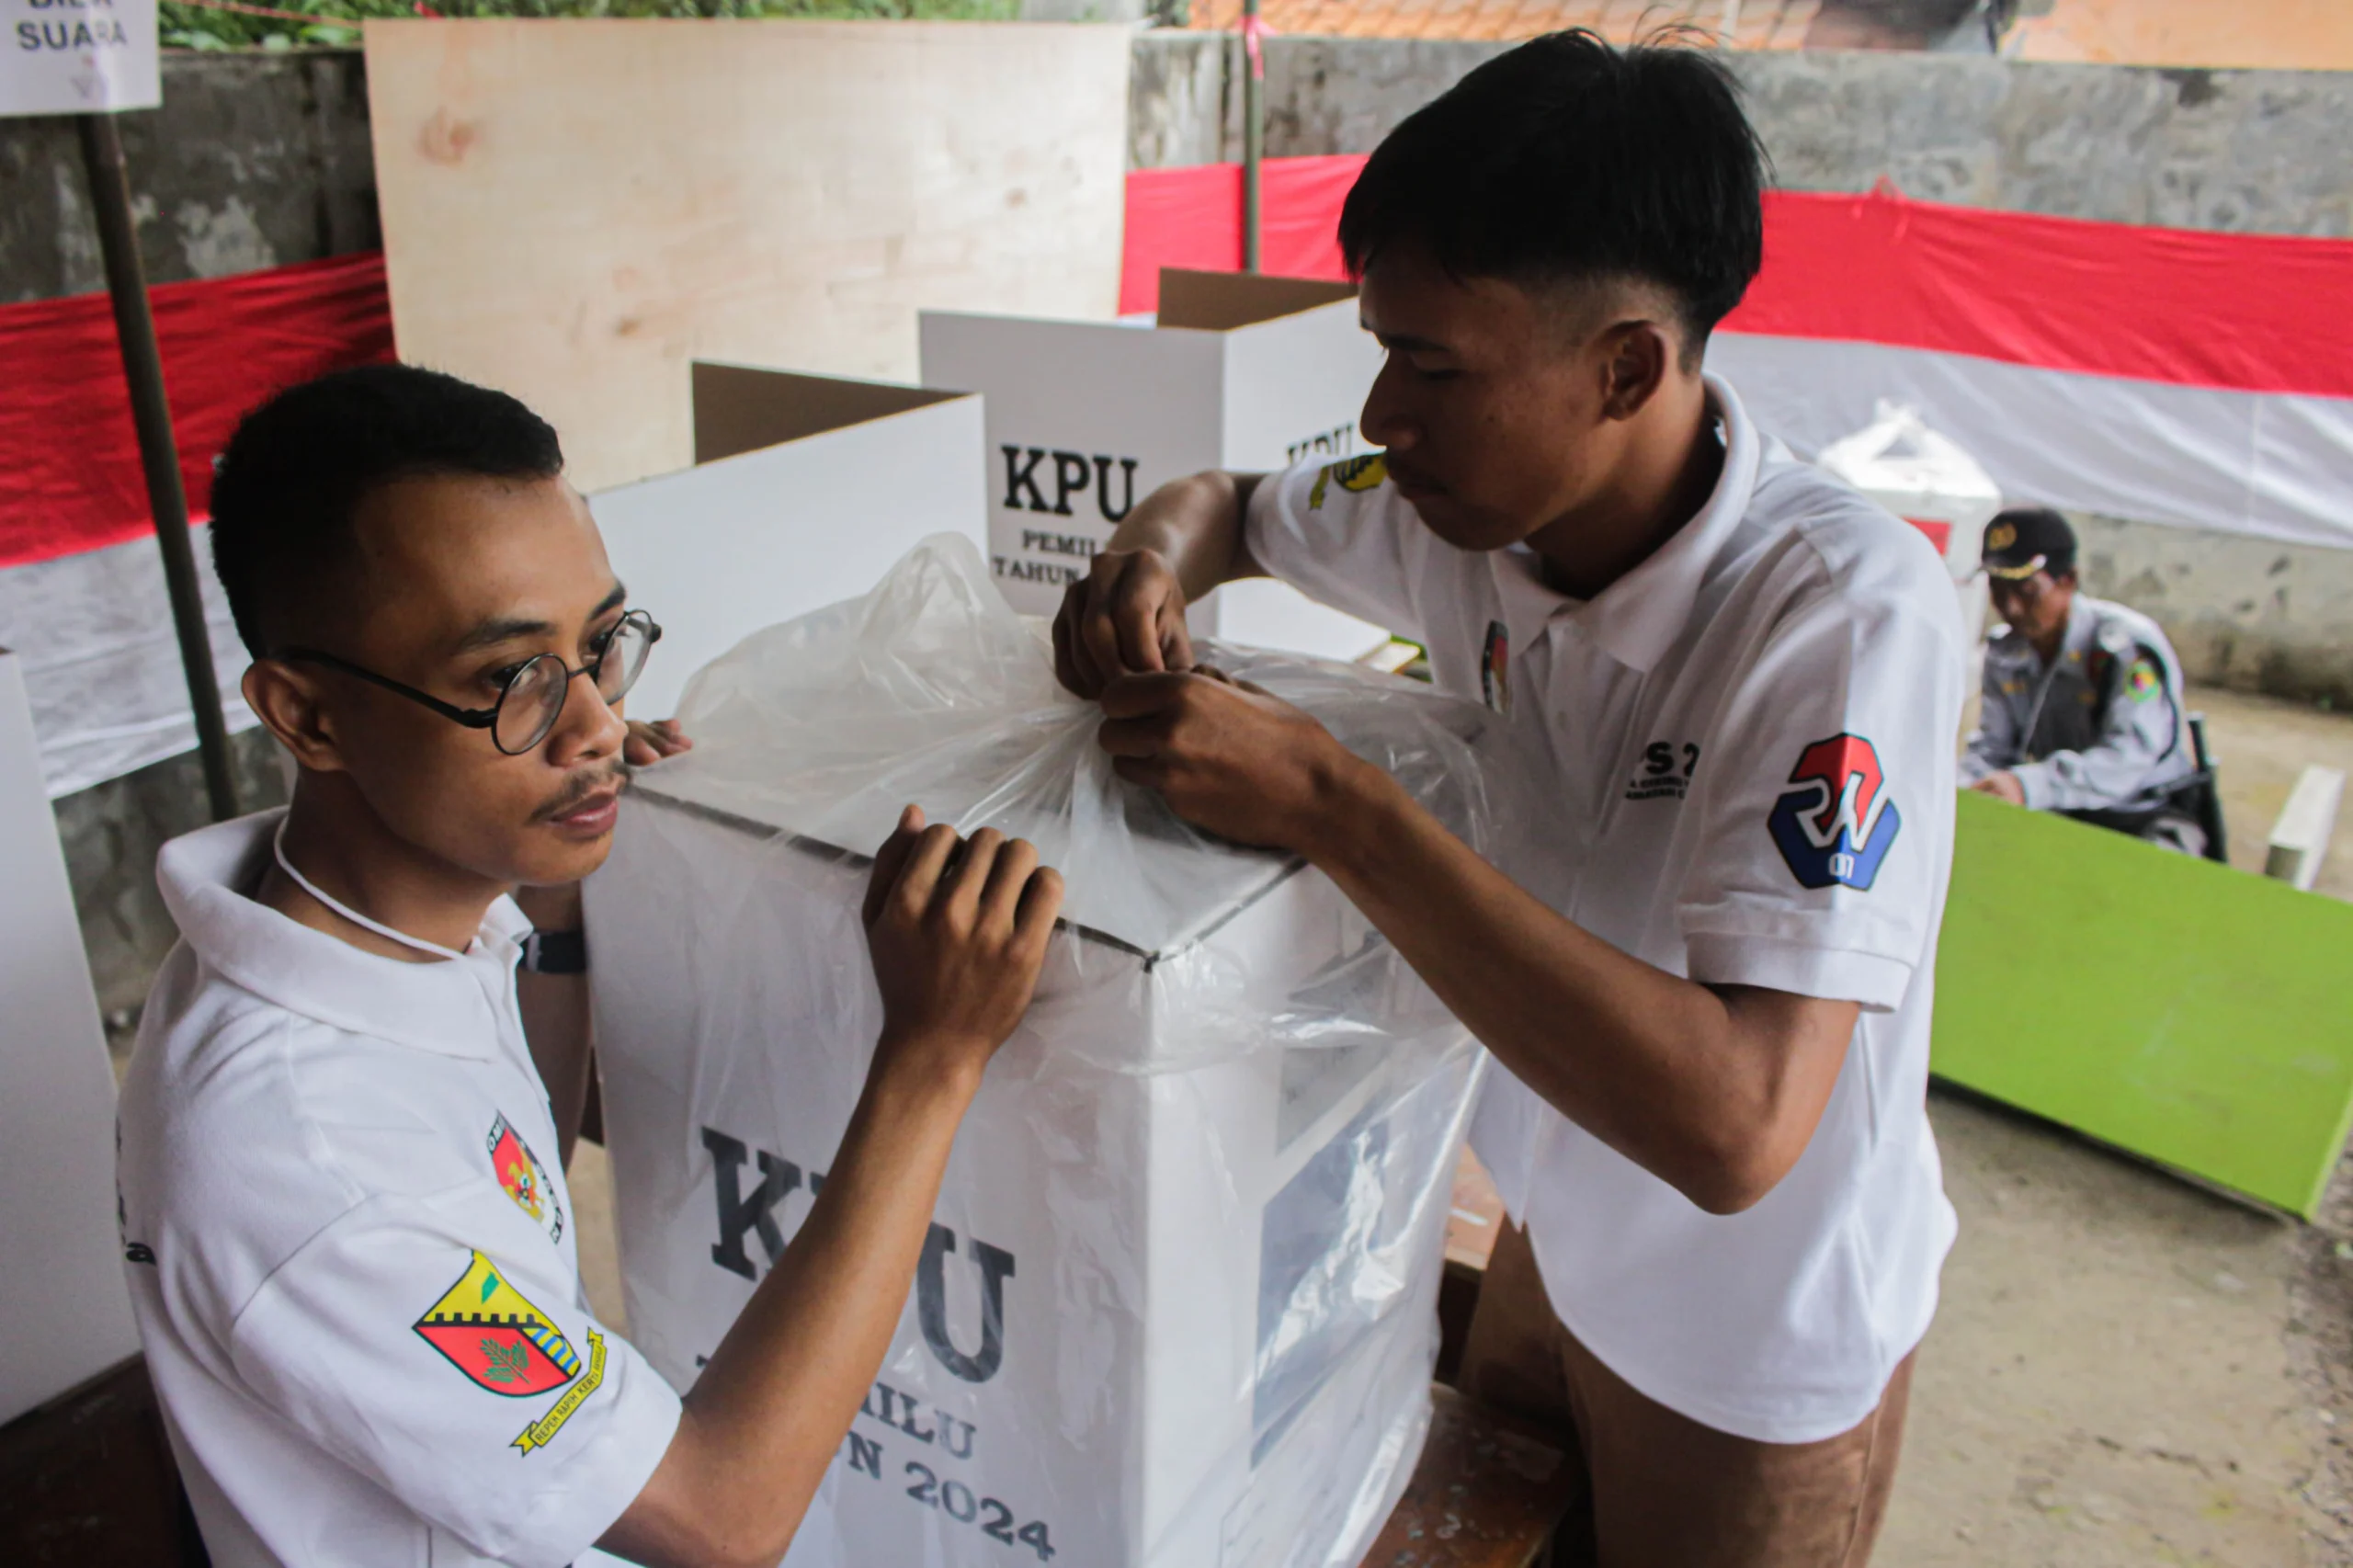 Butuh 453 PPS Pilkada 2024, KPU Kota Bandung Beberkan Honor Petugas BANDUNG - Komisi Pemilihan Umum (KPU) Kota Bandung, membutuhkan 453 panitia pemungutan suara (PPS). Ratusan petugas ini dibutuhkan untuk mengisi tempat pemungutan suara (TPS) di 151 kelurahan, menjelang Pilkada 2024. Kepala KPU Kota Bandung, Wenti Frihadianti menjelaskan bahwa kebutuhan ratusan petugas itu, yakni untuk mengisi dan bertugas saat Pilkada Kota Bandung 2024 mendatang. “Untuk kebutuhan total sebanyak 453 orang yang setiap satu kelurahan diisi oleh tiga orang petugas,” kata Wenti Frihadianti, kepada wartawan di Bandung, Selasa (21/5). Adapun, dirinya menuturkan bahwa saat ini KPU Kota Bandung sudah memasuki tahapan seleksi wawancara calon petugas. Tercatat pendaftaran itu diikuti oleh 800 peserta yang berasal dari 151 kelurahan se-Kota Bandung. Lalu, pada pelaksanaannya, tes tersebut dibantu oleh Panitia Pemilihan Kecamatan (PPK) di masing-masing kecamatan. Sebagai catatan, bagi petugas yang lolos wawancara ini nantinya akan dilanjutkan dengan penetapan hasil. Sementara itu, pihaknya membeberkan jumlah honor yang bakal diterima para petugas PPS nanti. Menurutnya untuk besaran honor ketua maupun anggota PPS di Pilkada serentak 2024, bernilai sama dengan Pemilu kemarin. “Untuk honorarium PPS itu ketuanya Rp1,5 juta dan untuk anggota Rp1,3 juta per orang. Untuk masa kontrak kerjanya sampai bulan Januari 2025,” bebernya. Lebih jelas, dirinya menjelaskan tahapan seleksi wawancara tersebut. Dimulai pada tanggal 21-22 Mei 2024 dan hasilnya diumumkan pada 24-25 Mei 2024. Adapun calon anggota PPS dari hasil seleksi akan ditetapkan pada 25 Mei 2024 dan dilantik pada 26 Mei 2024. “Saat ini KPU Kota Bandung sedang dalam pembentukan PPS dan untuk tahapan saat ini yaitu proses wawancara yang sedang berlangsung sampai besok jam 08.00 WIB hingga selesai,” pungkasnya.